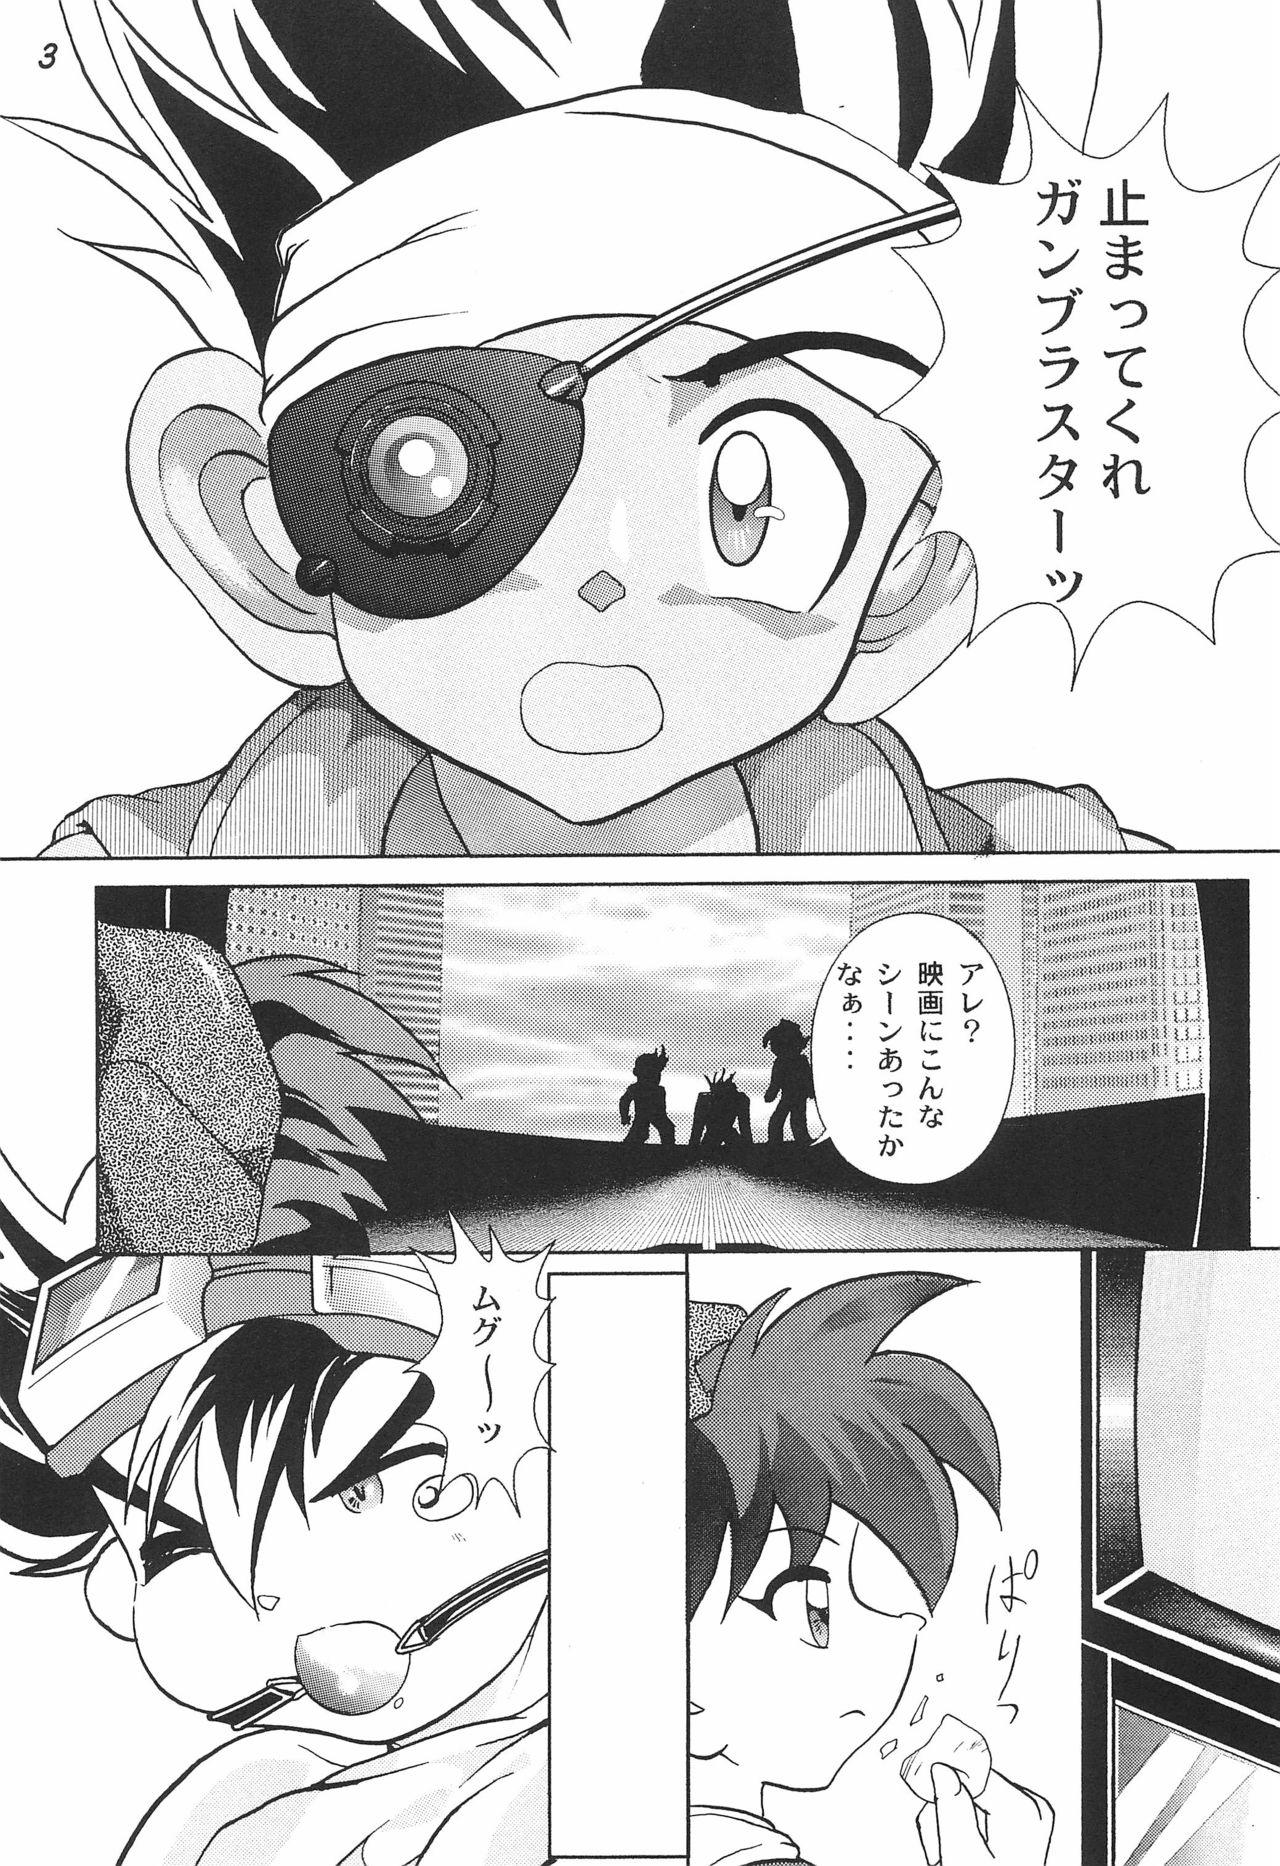 Dominate Gokuraku Tokkyuu AMINO - Bakusou kyoudai lets and go Boyfriend - Page 5